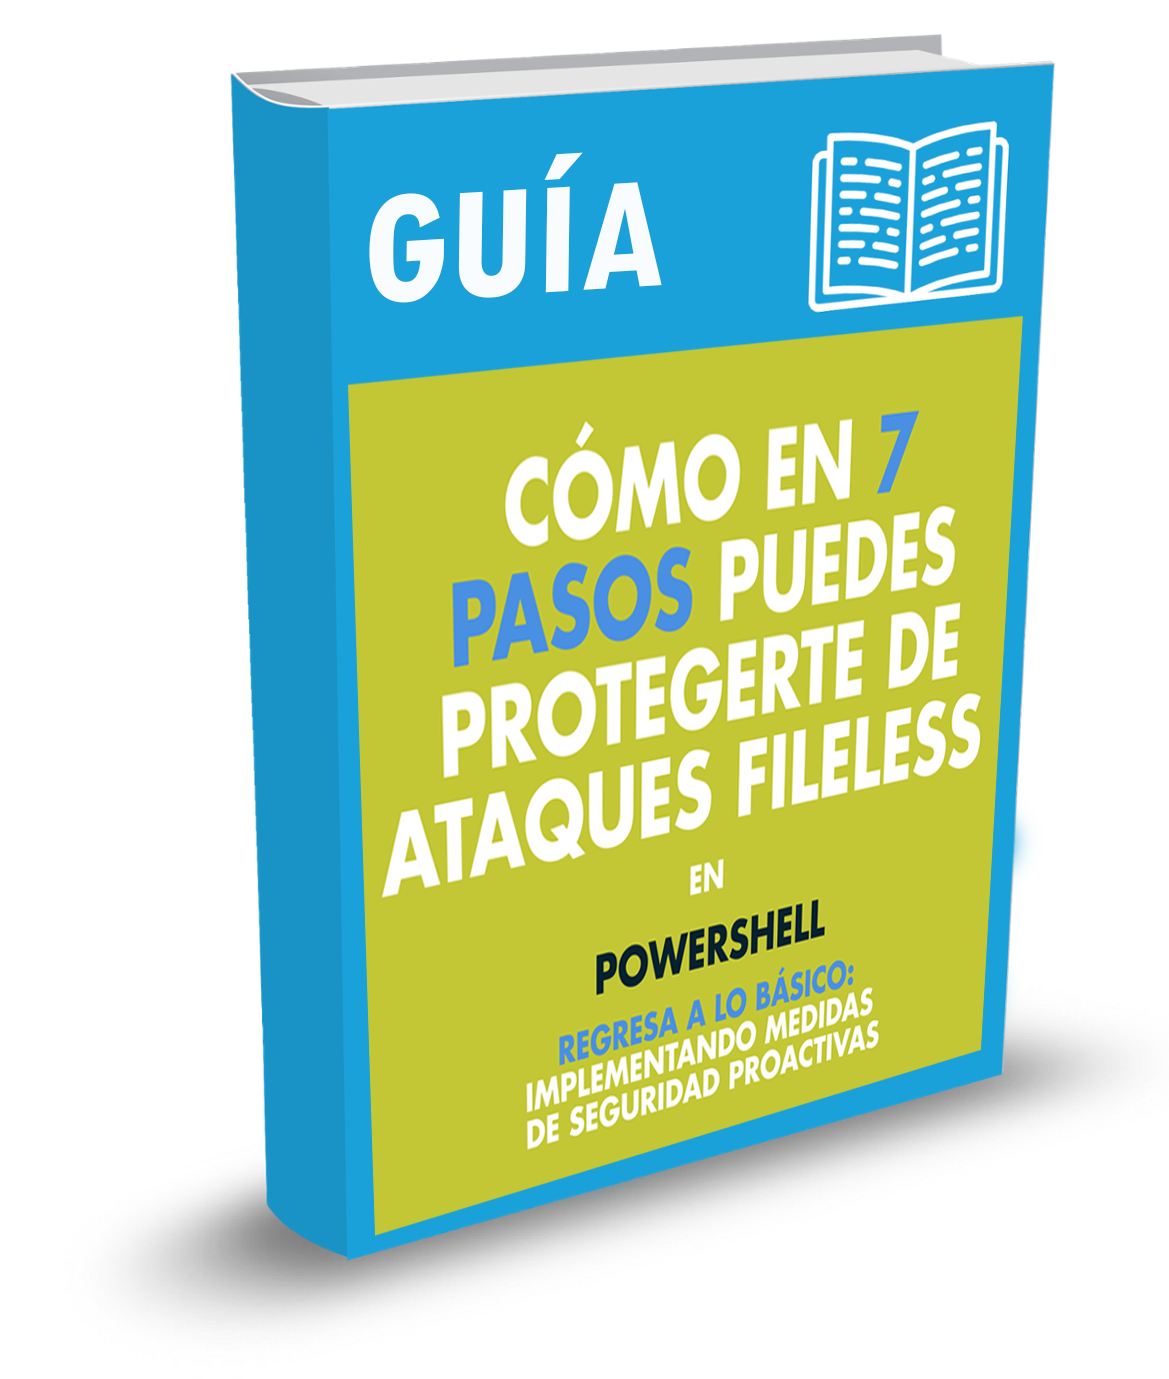 GUIA-7-PASOS-PARA-PROTEGERTE-DE-ATAQUES-FILELESS.png